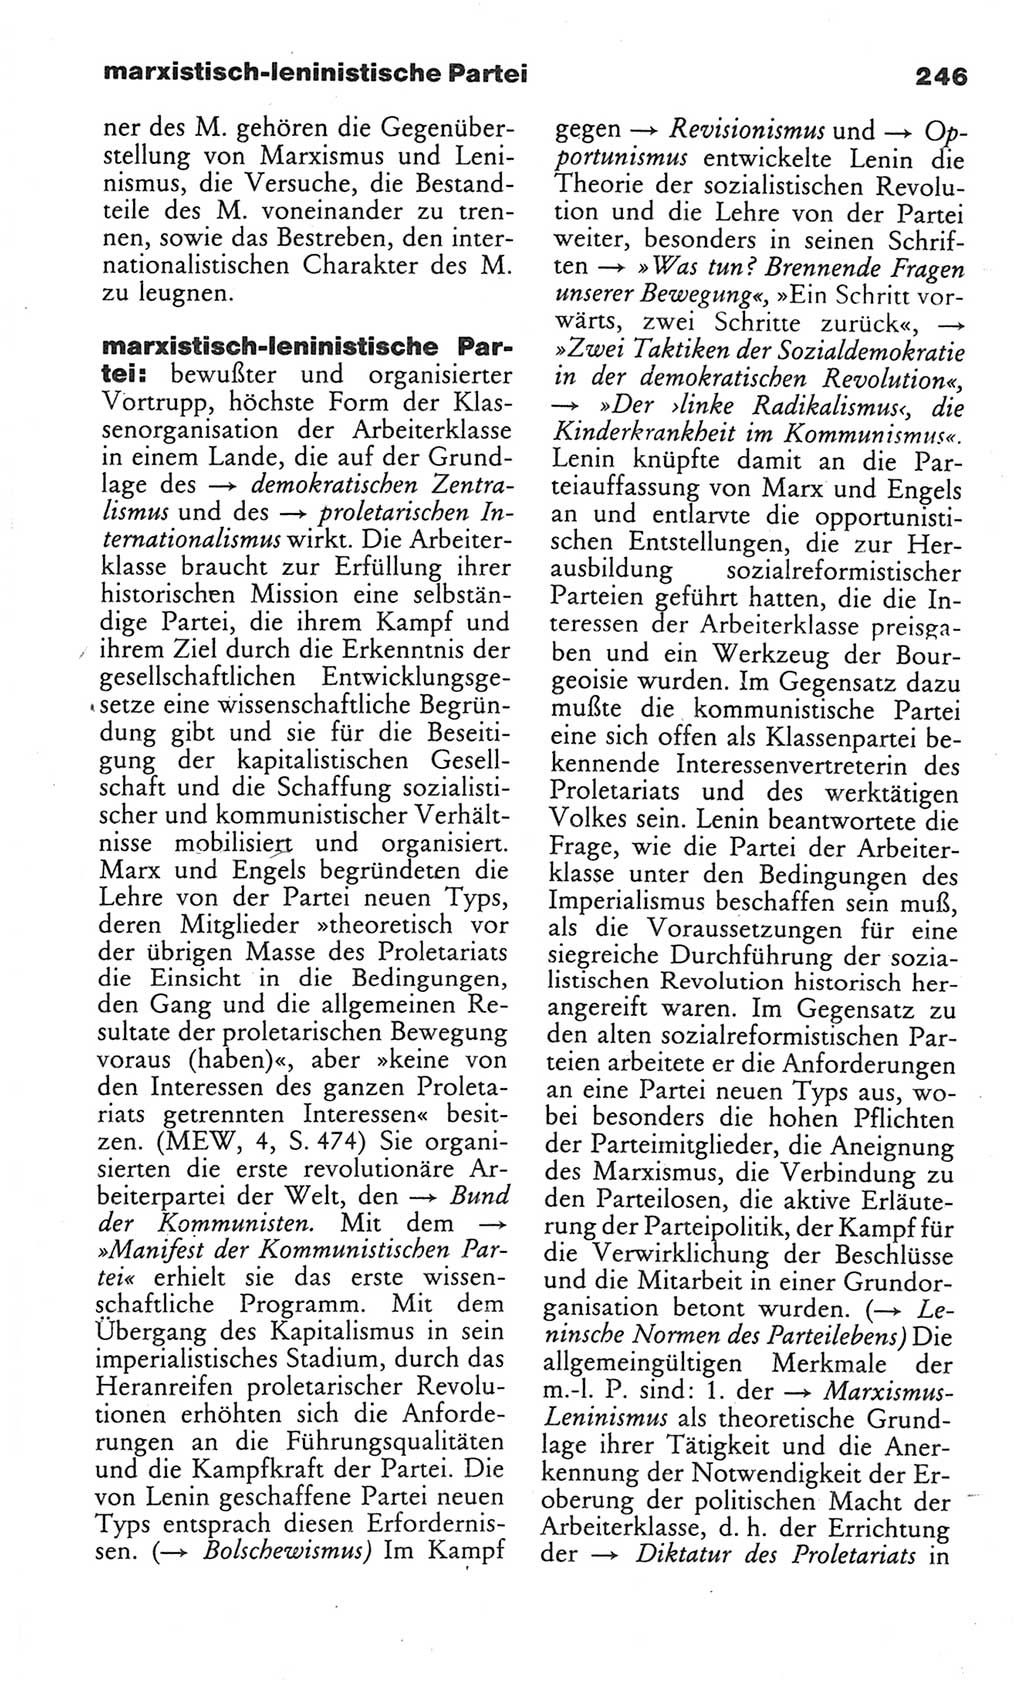 Wörterbuch des wissenschaftlichen Kommunismus [Deutsche Demokratische Republik (DDR)] 1984, Seite 246 (Wb. wiss. Komm. DDR 1984, S. 246)